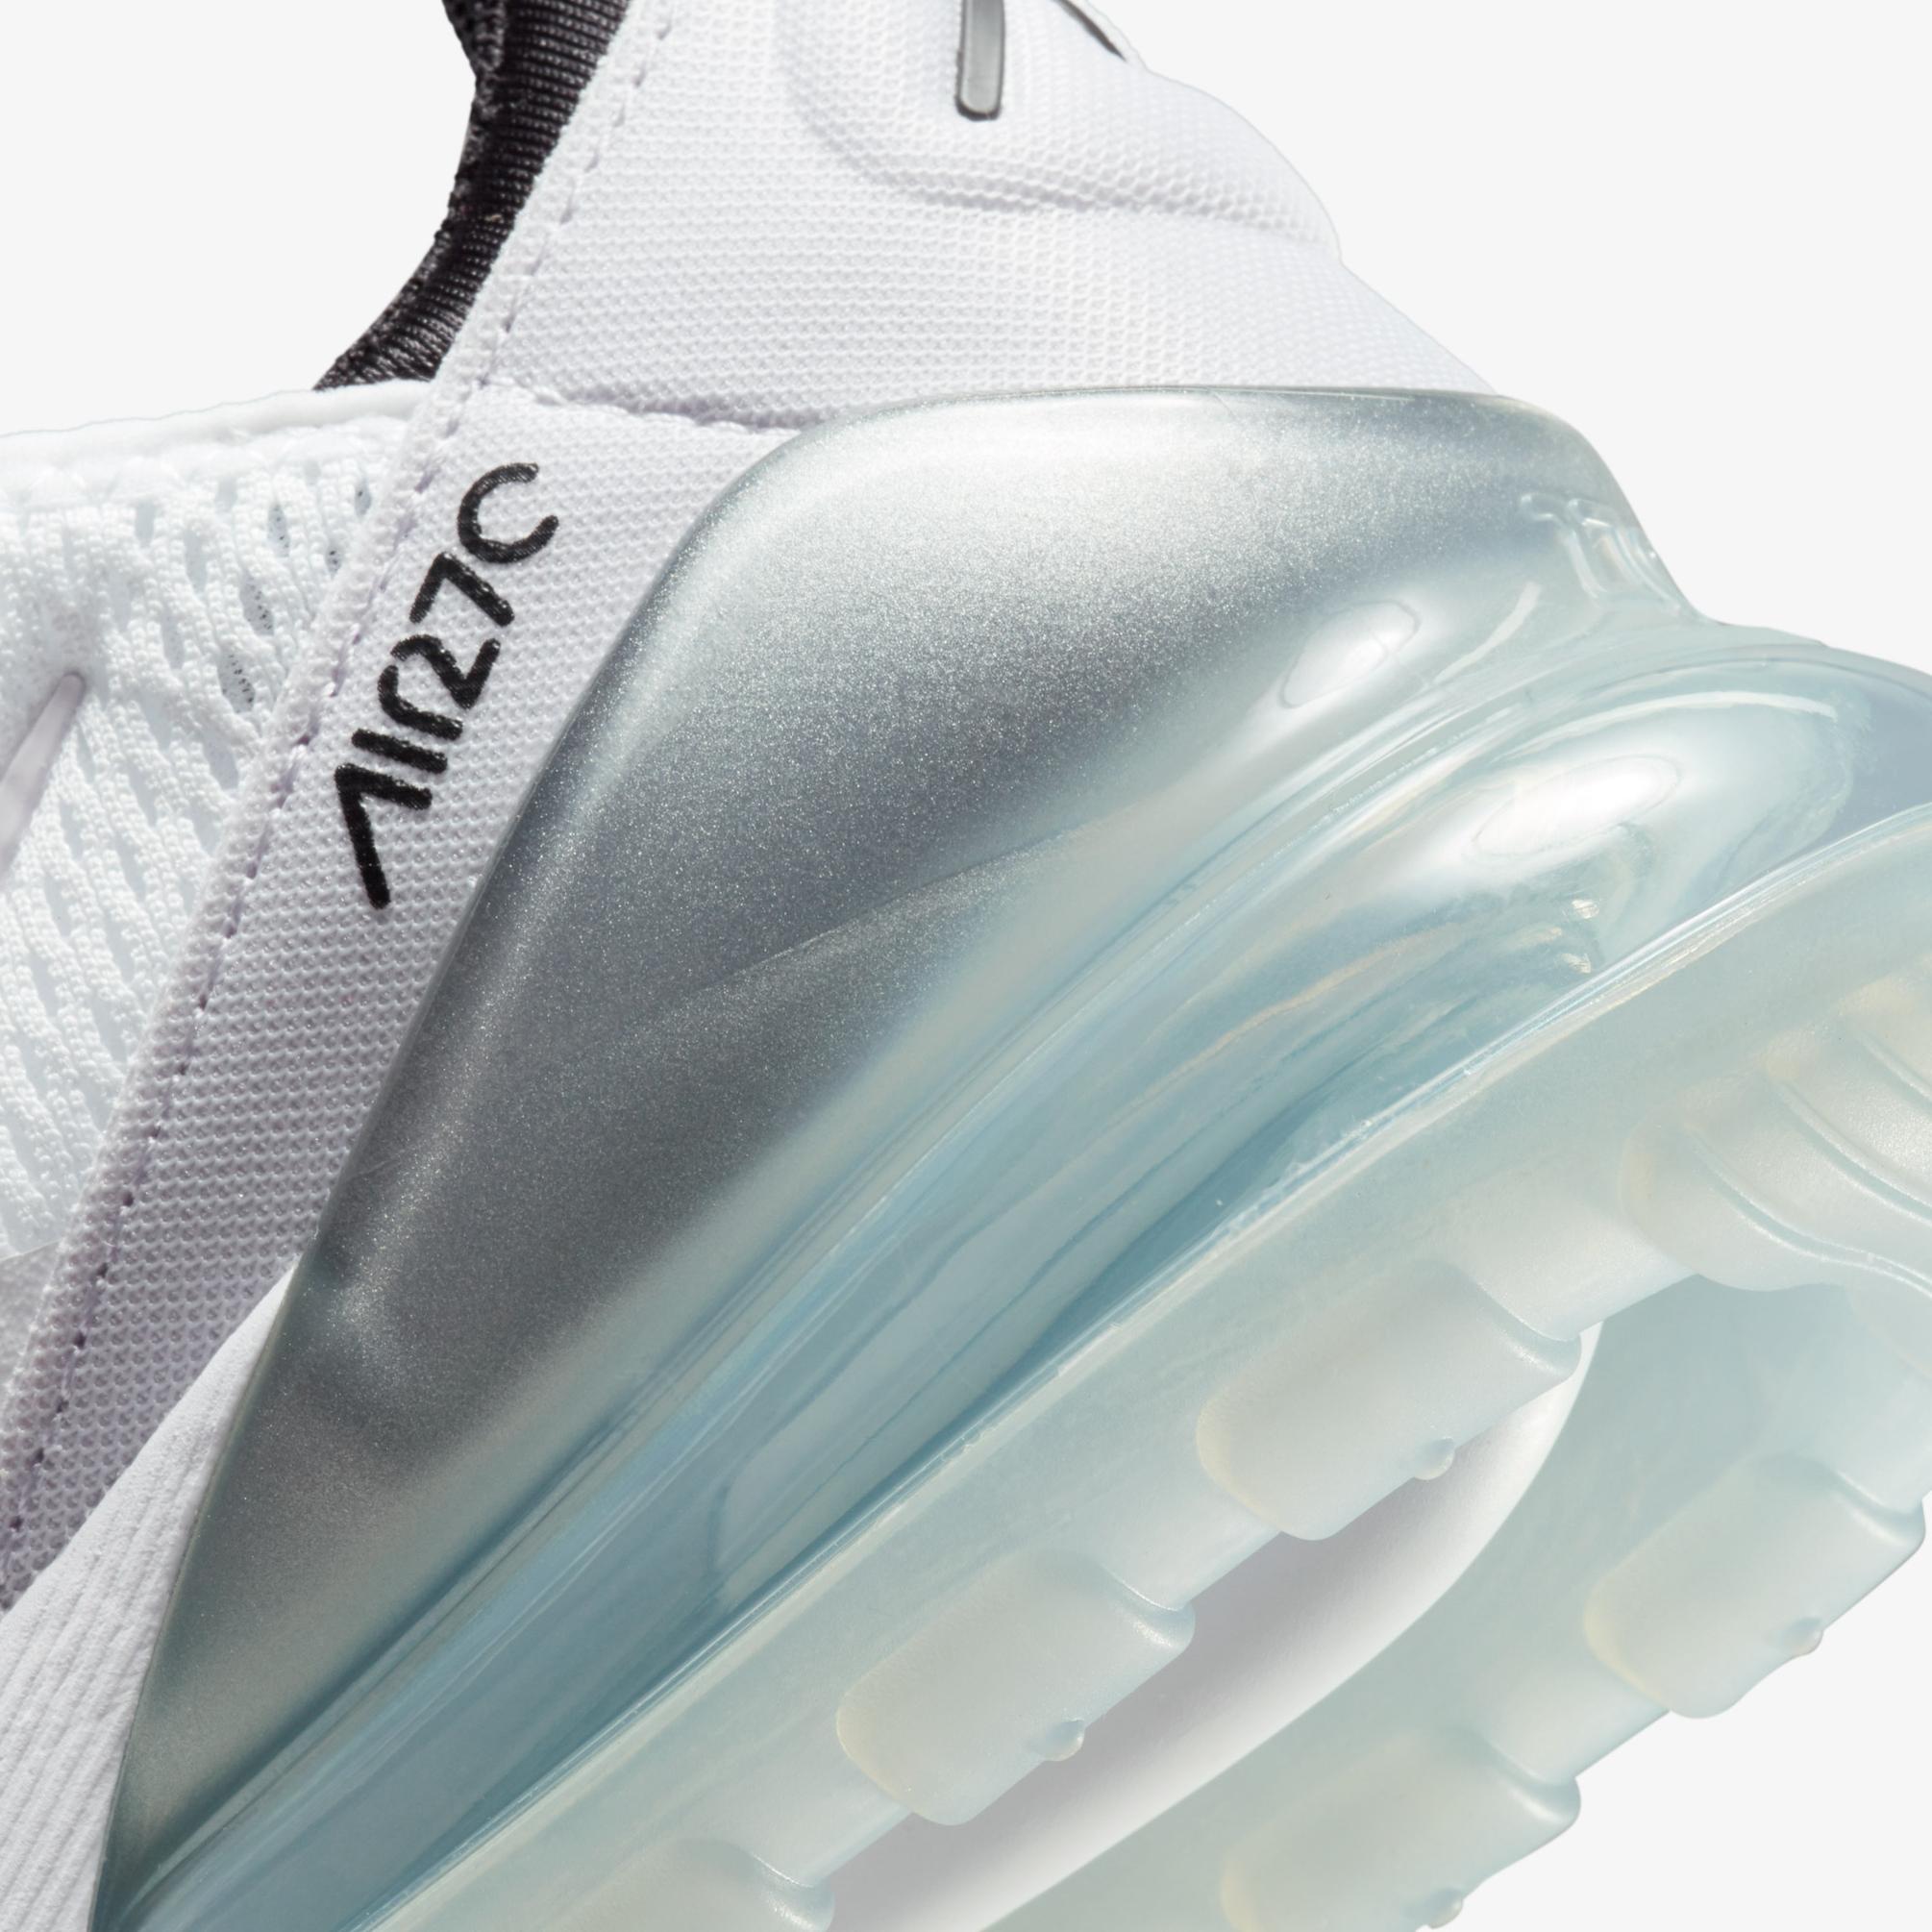  Nike Air Max 270 Kadın Beyaz Spor Ayakkabı